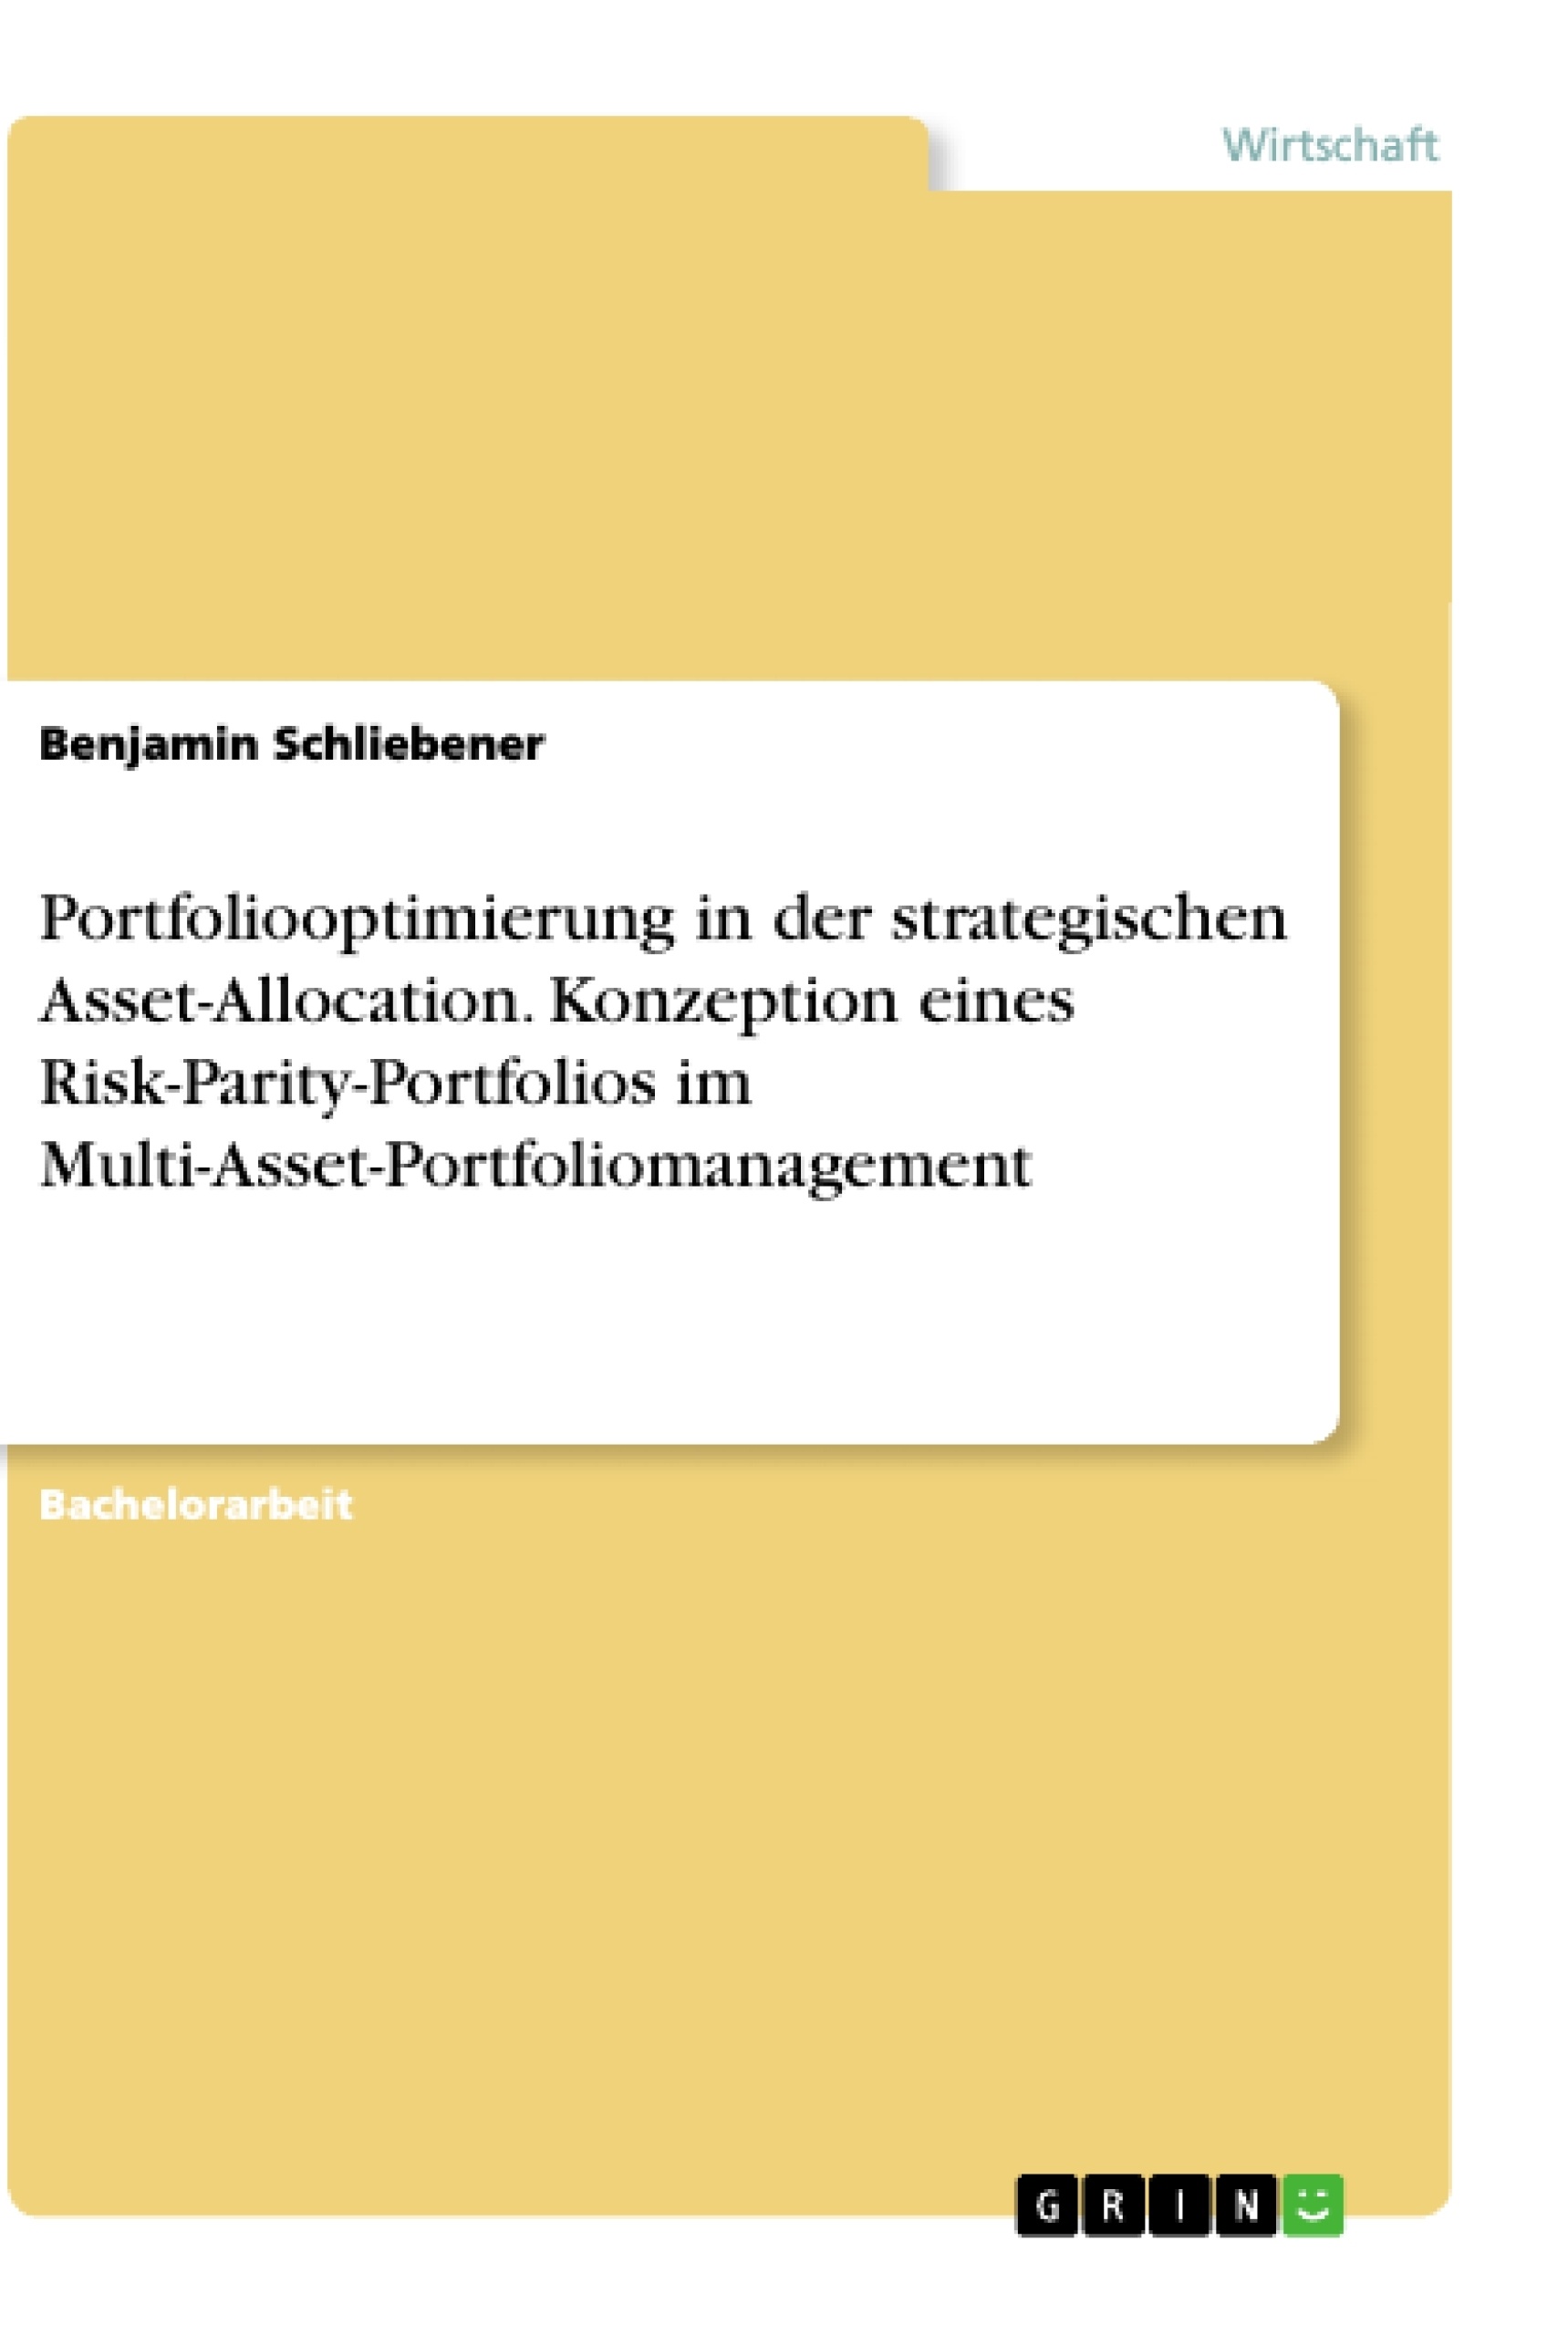 Titel: Portfoliooptimierung in der strategischen Asset-Allocation. Konzeption eines Risk-Parity-Portfolios im Multi-Asset-Portfoliomanagement